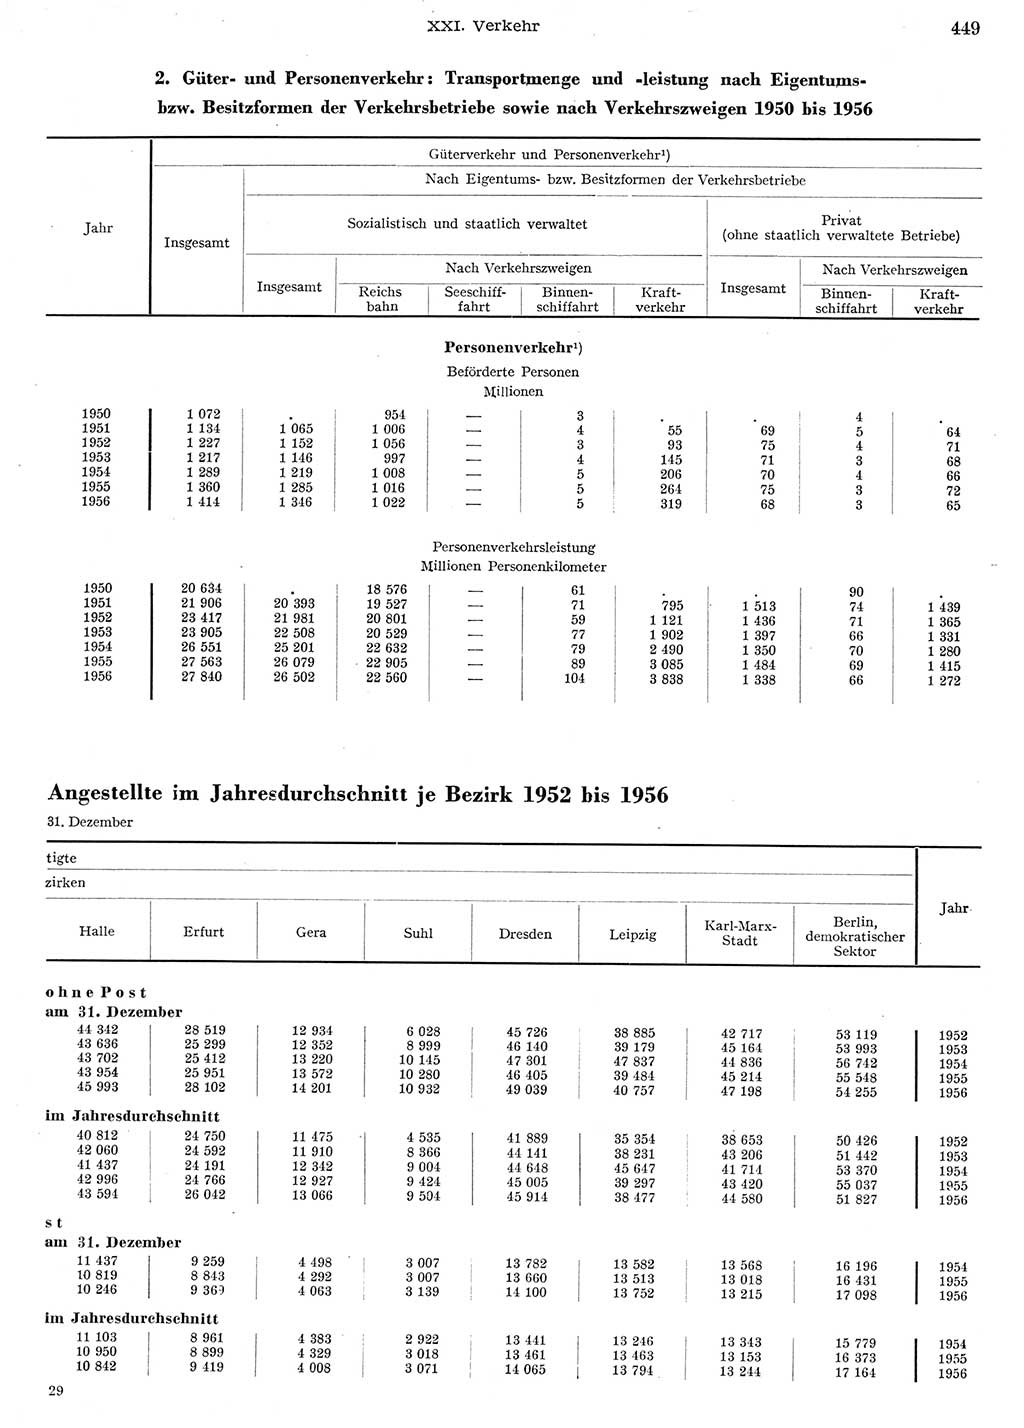 Statistisches Jahrbuch der Deutschen Demokratischen Republik (DDR) 1956, Seite 449 (Stat. Jb. DDR 1956, S. 449)